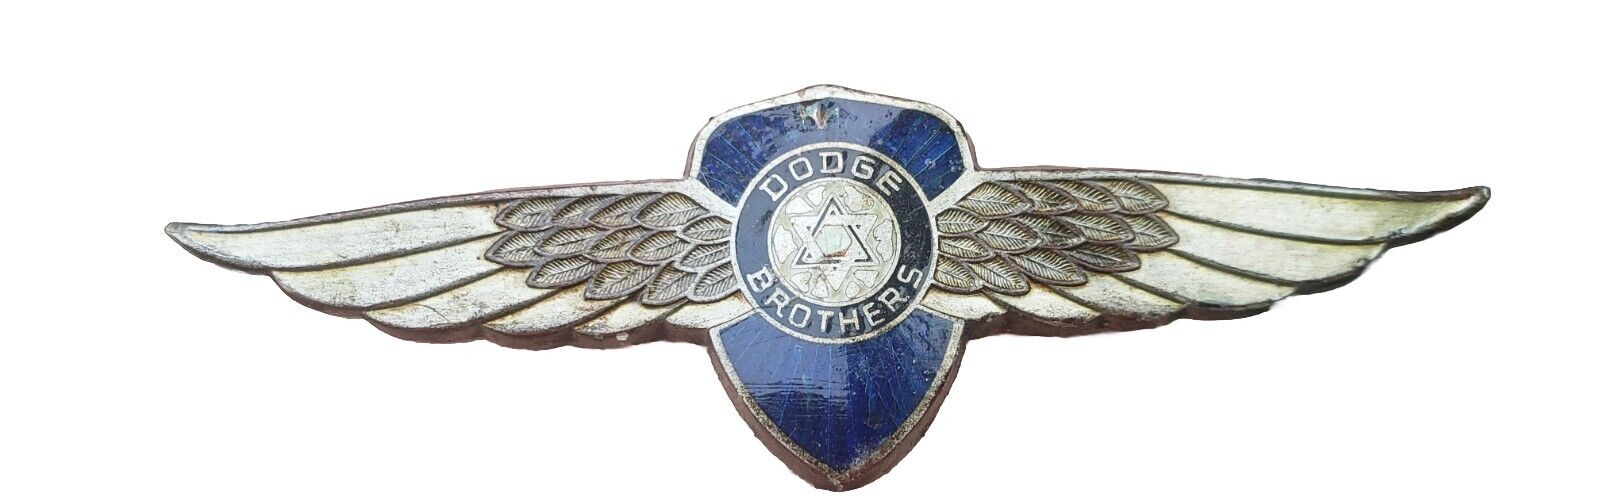 Vintage Dodge Brothers 1930's Trunk Emblem Winged Ornament